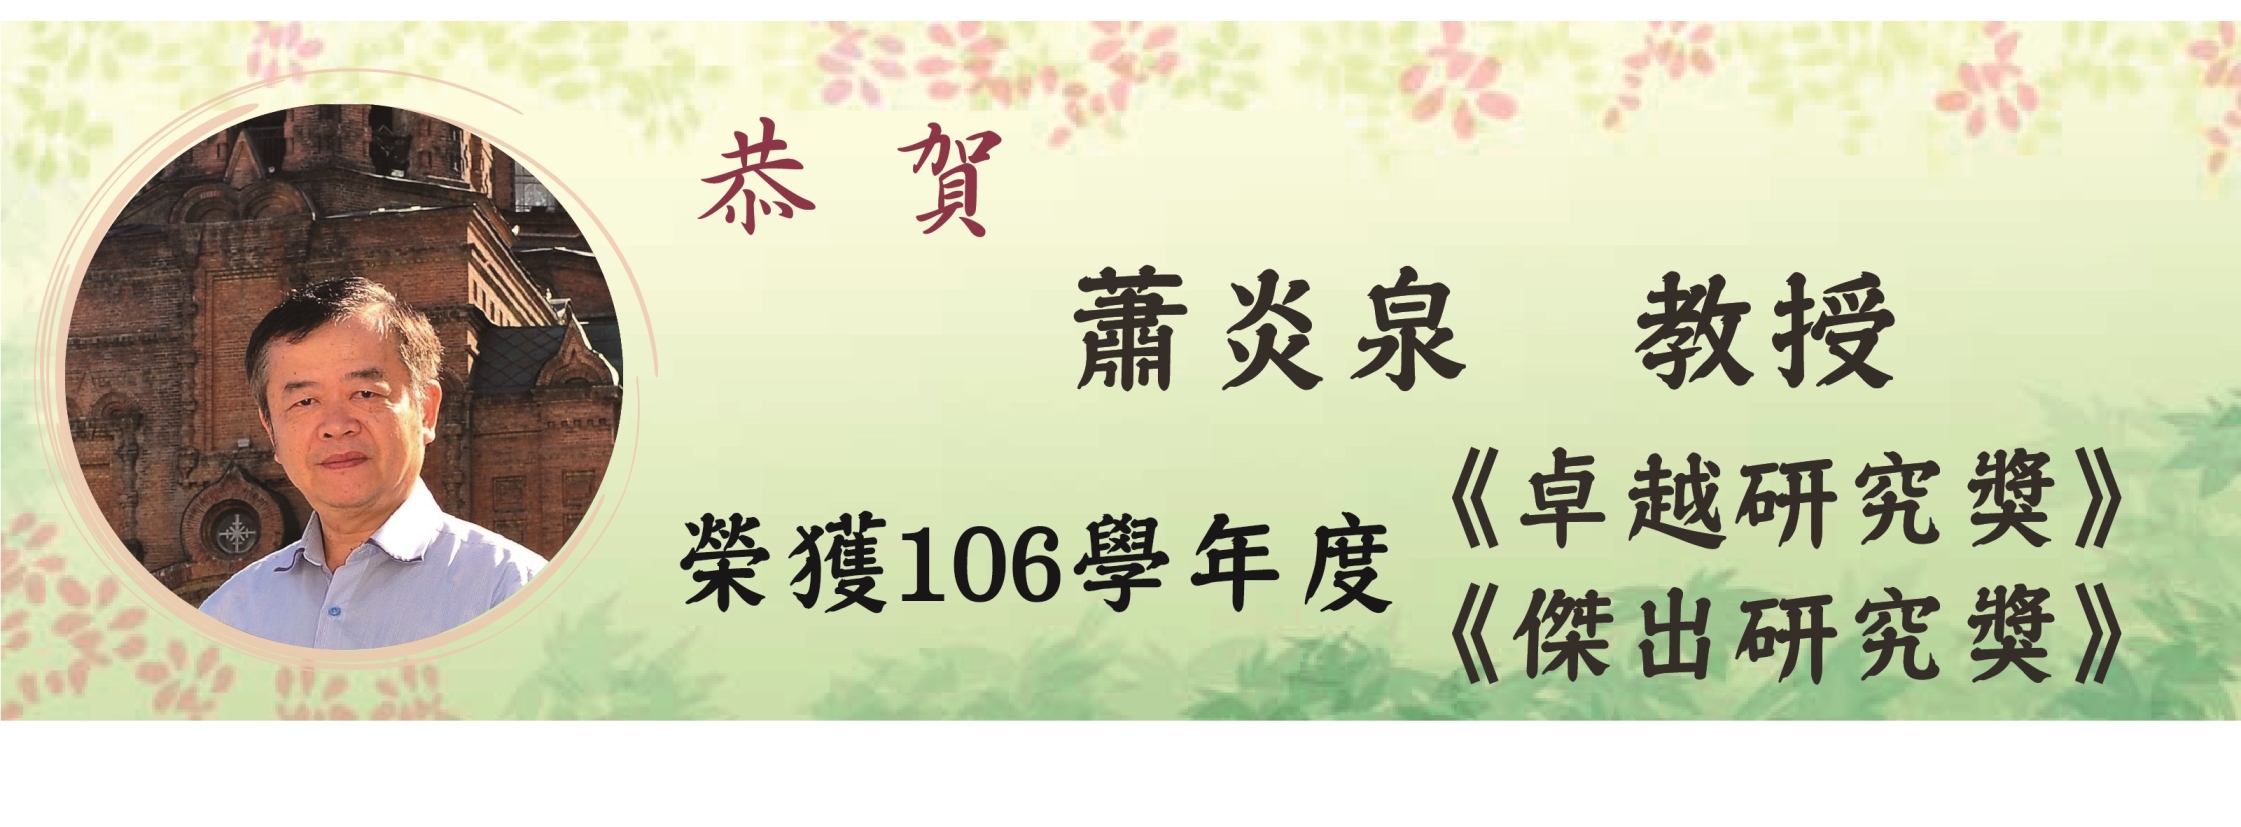 106學年度-蕭炎泉副教授-榮獲【卓越研究獎】【傑出研究獎】